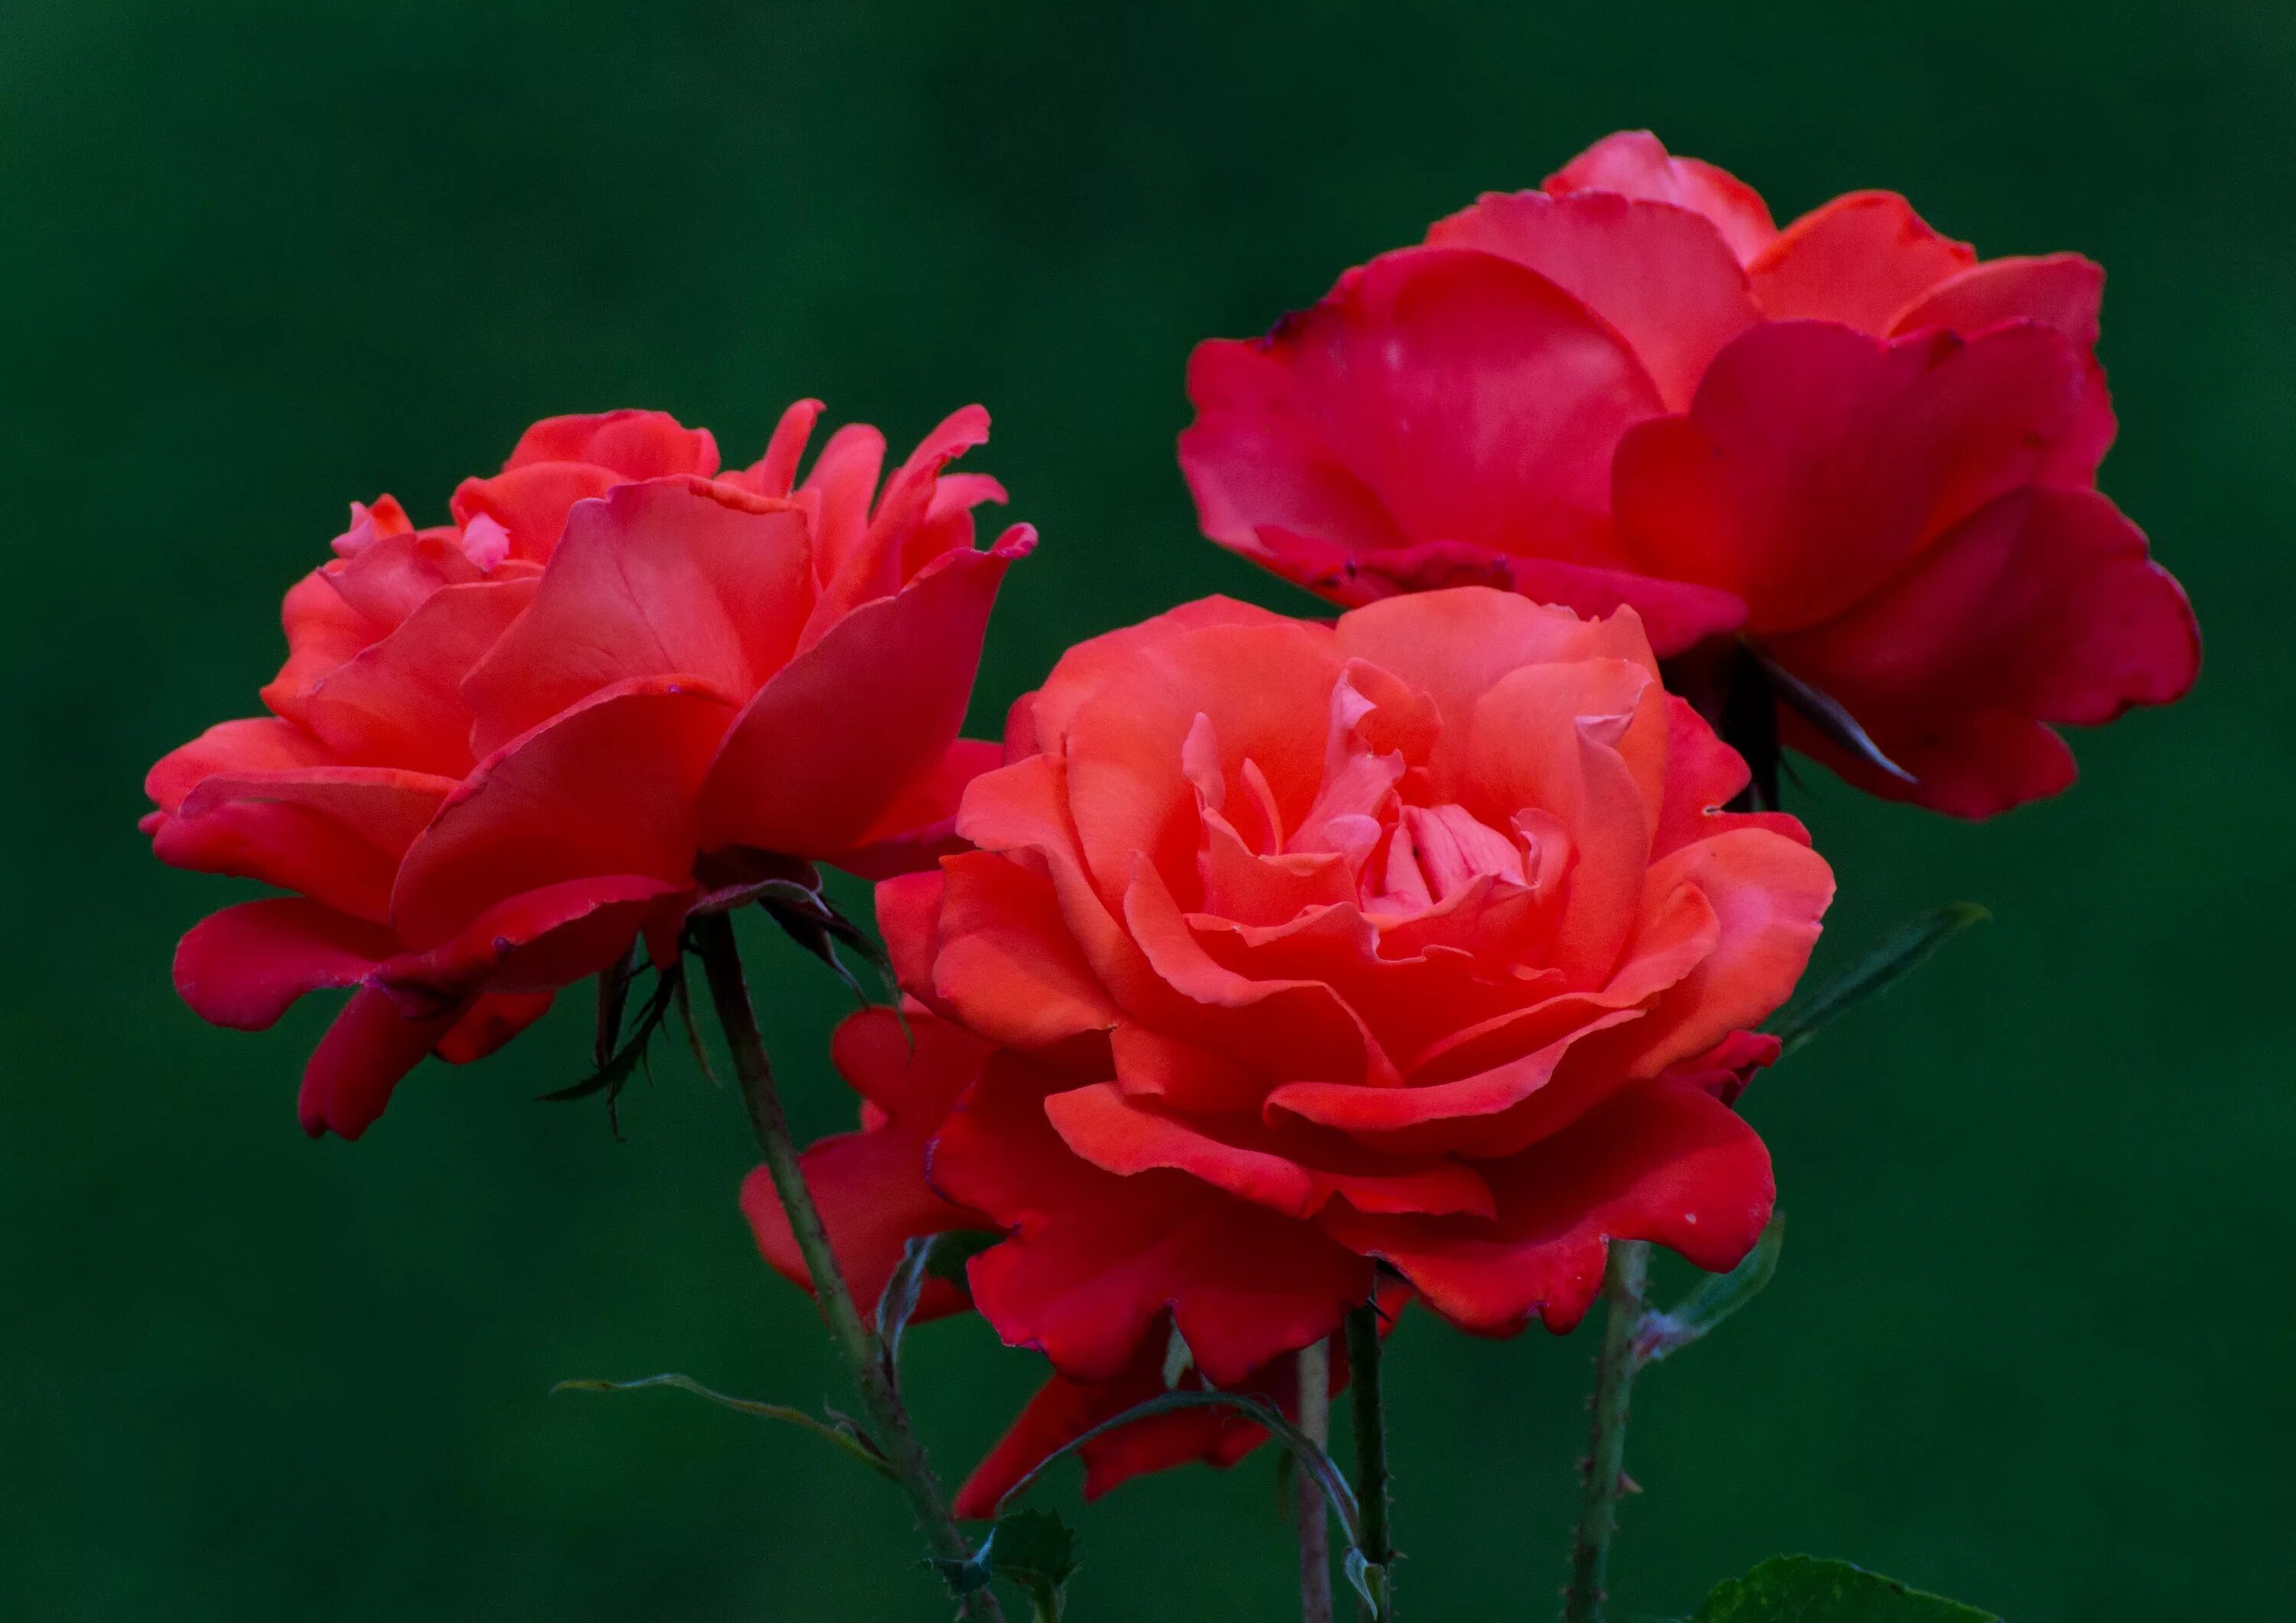 Розы 3 цветка. Три красные крупные розы. Три розочки. Цветок с тремя цветками.